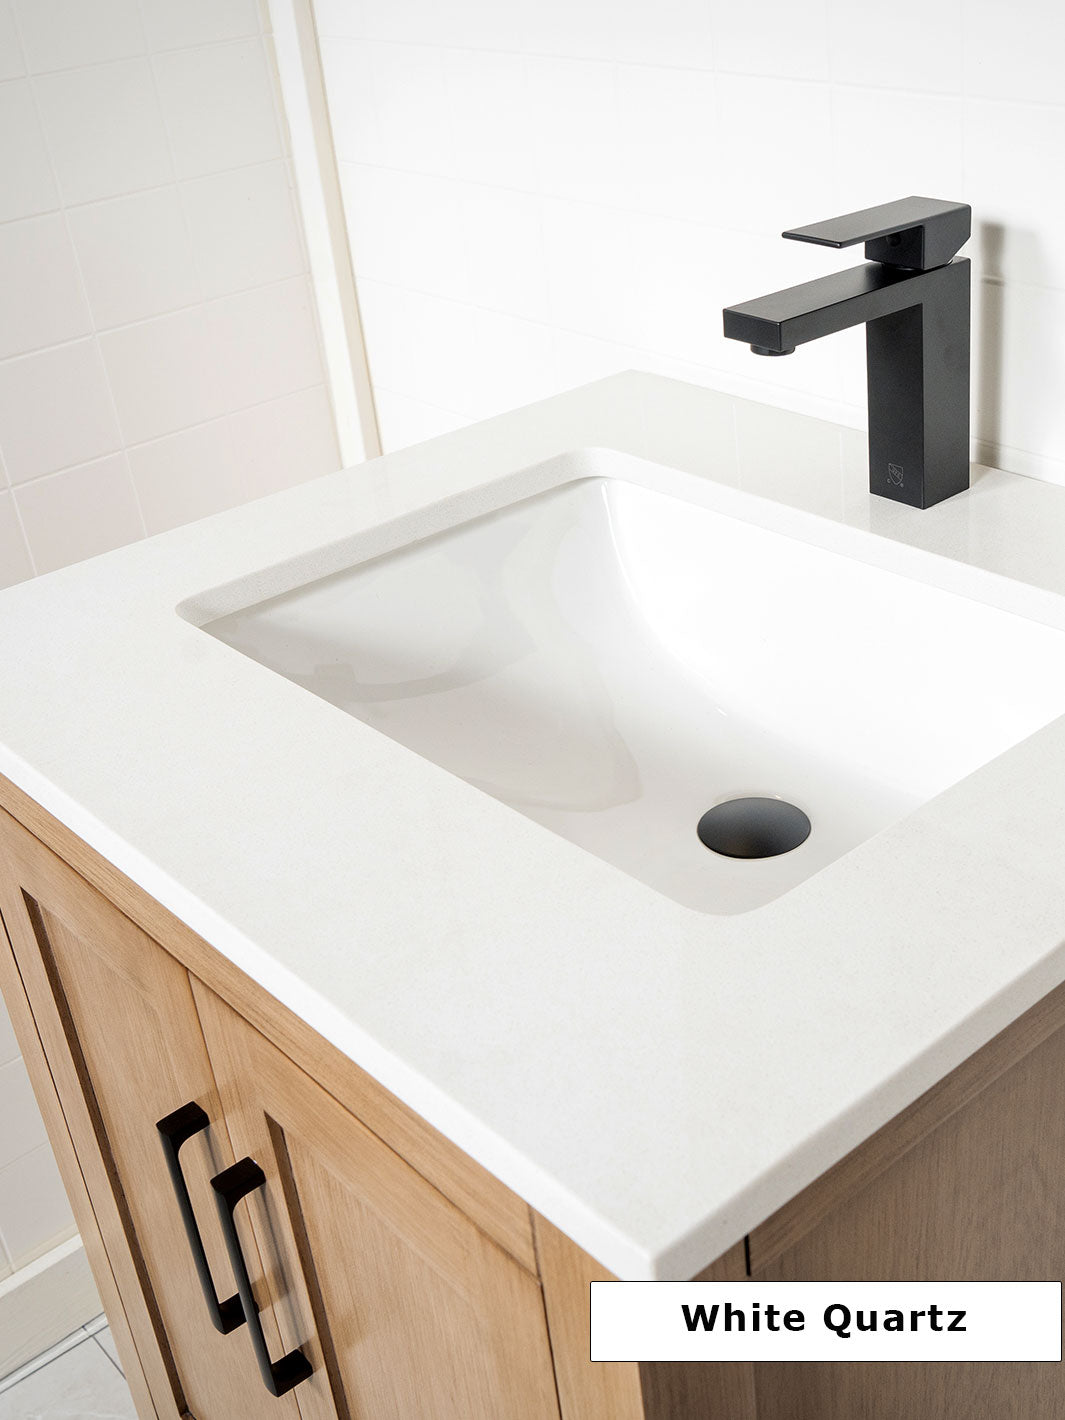 white quartz counter and matte black faucet